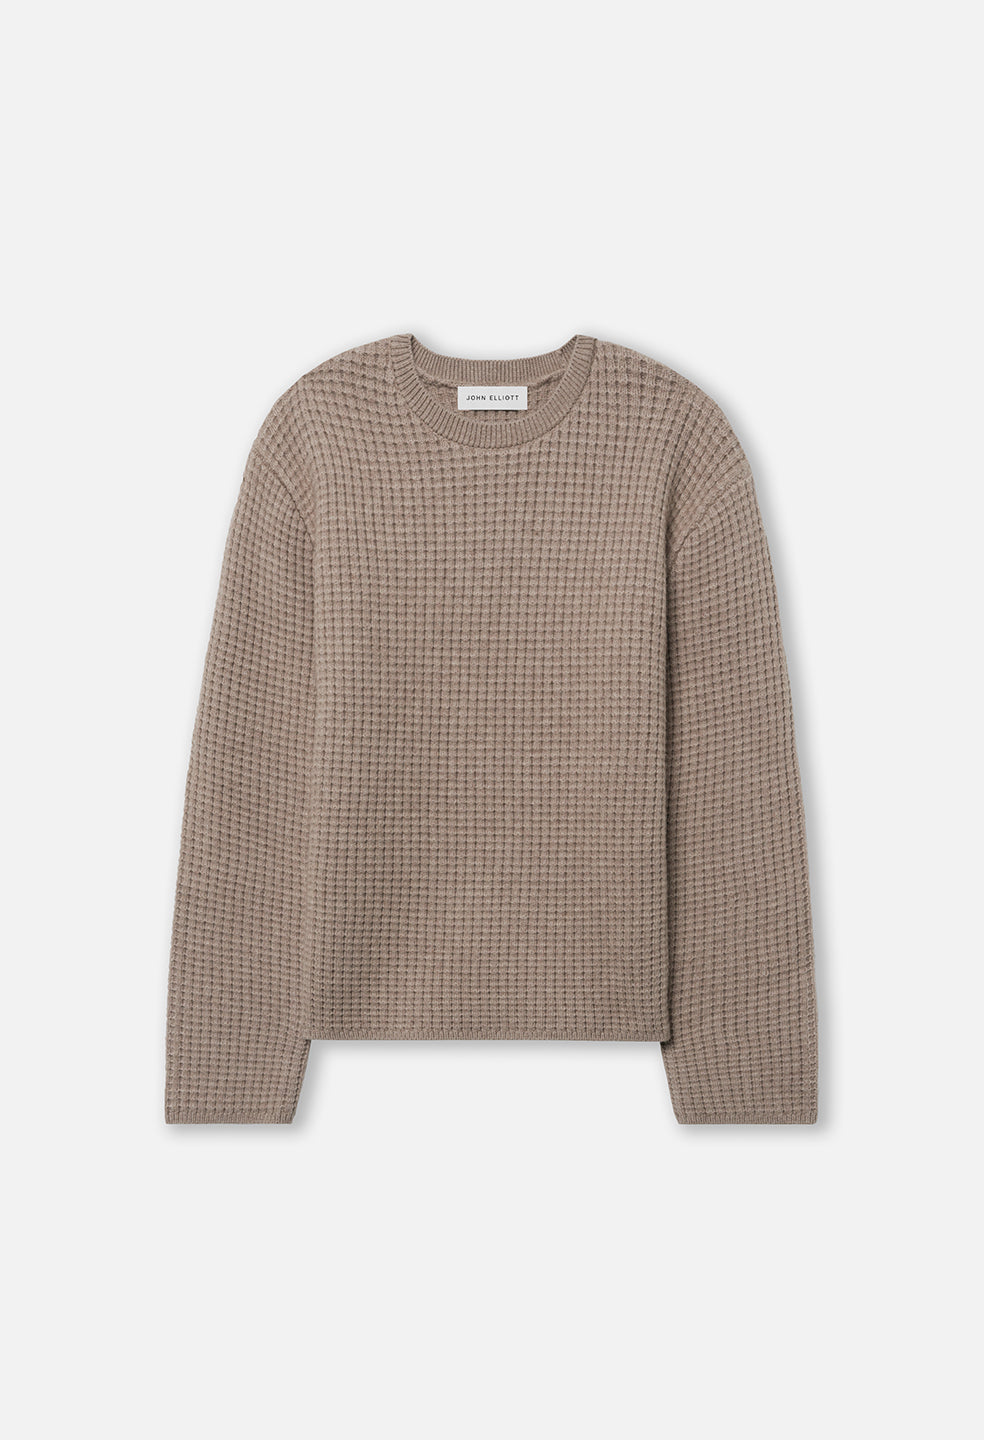 Men's Wool Waffle Knit Sweater